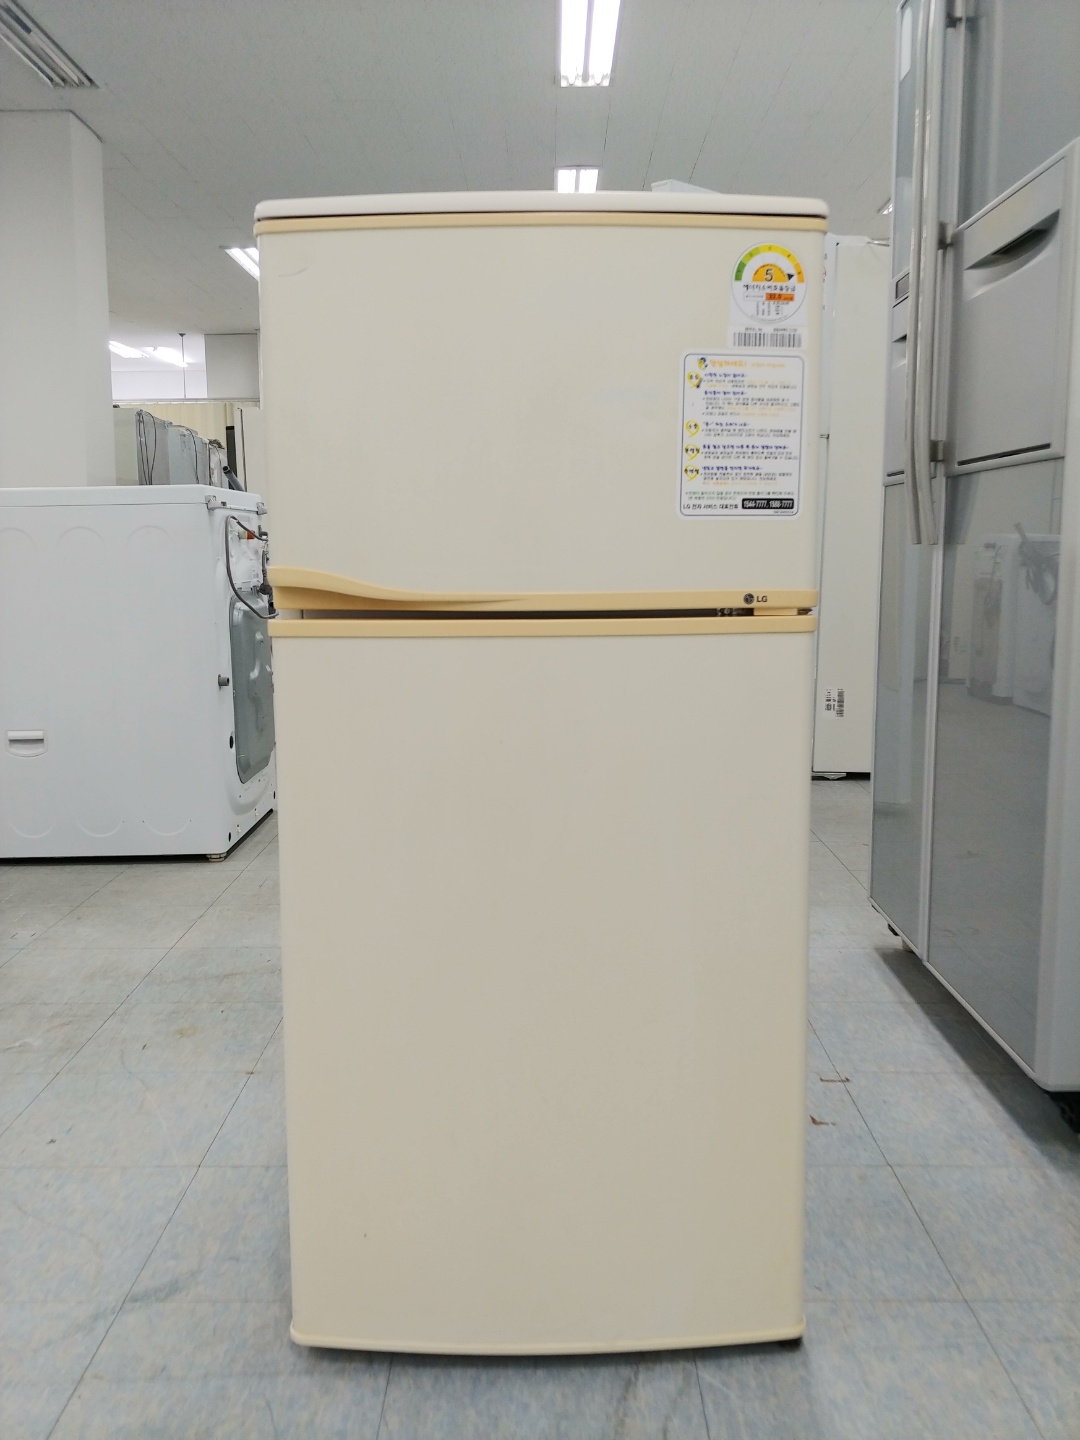 중고일반형냉장고 LG전자 137리터 2009년 하남 090609